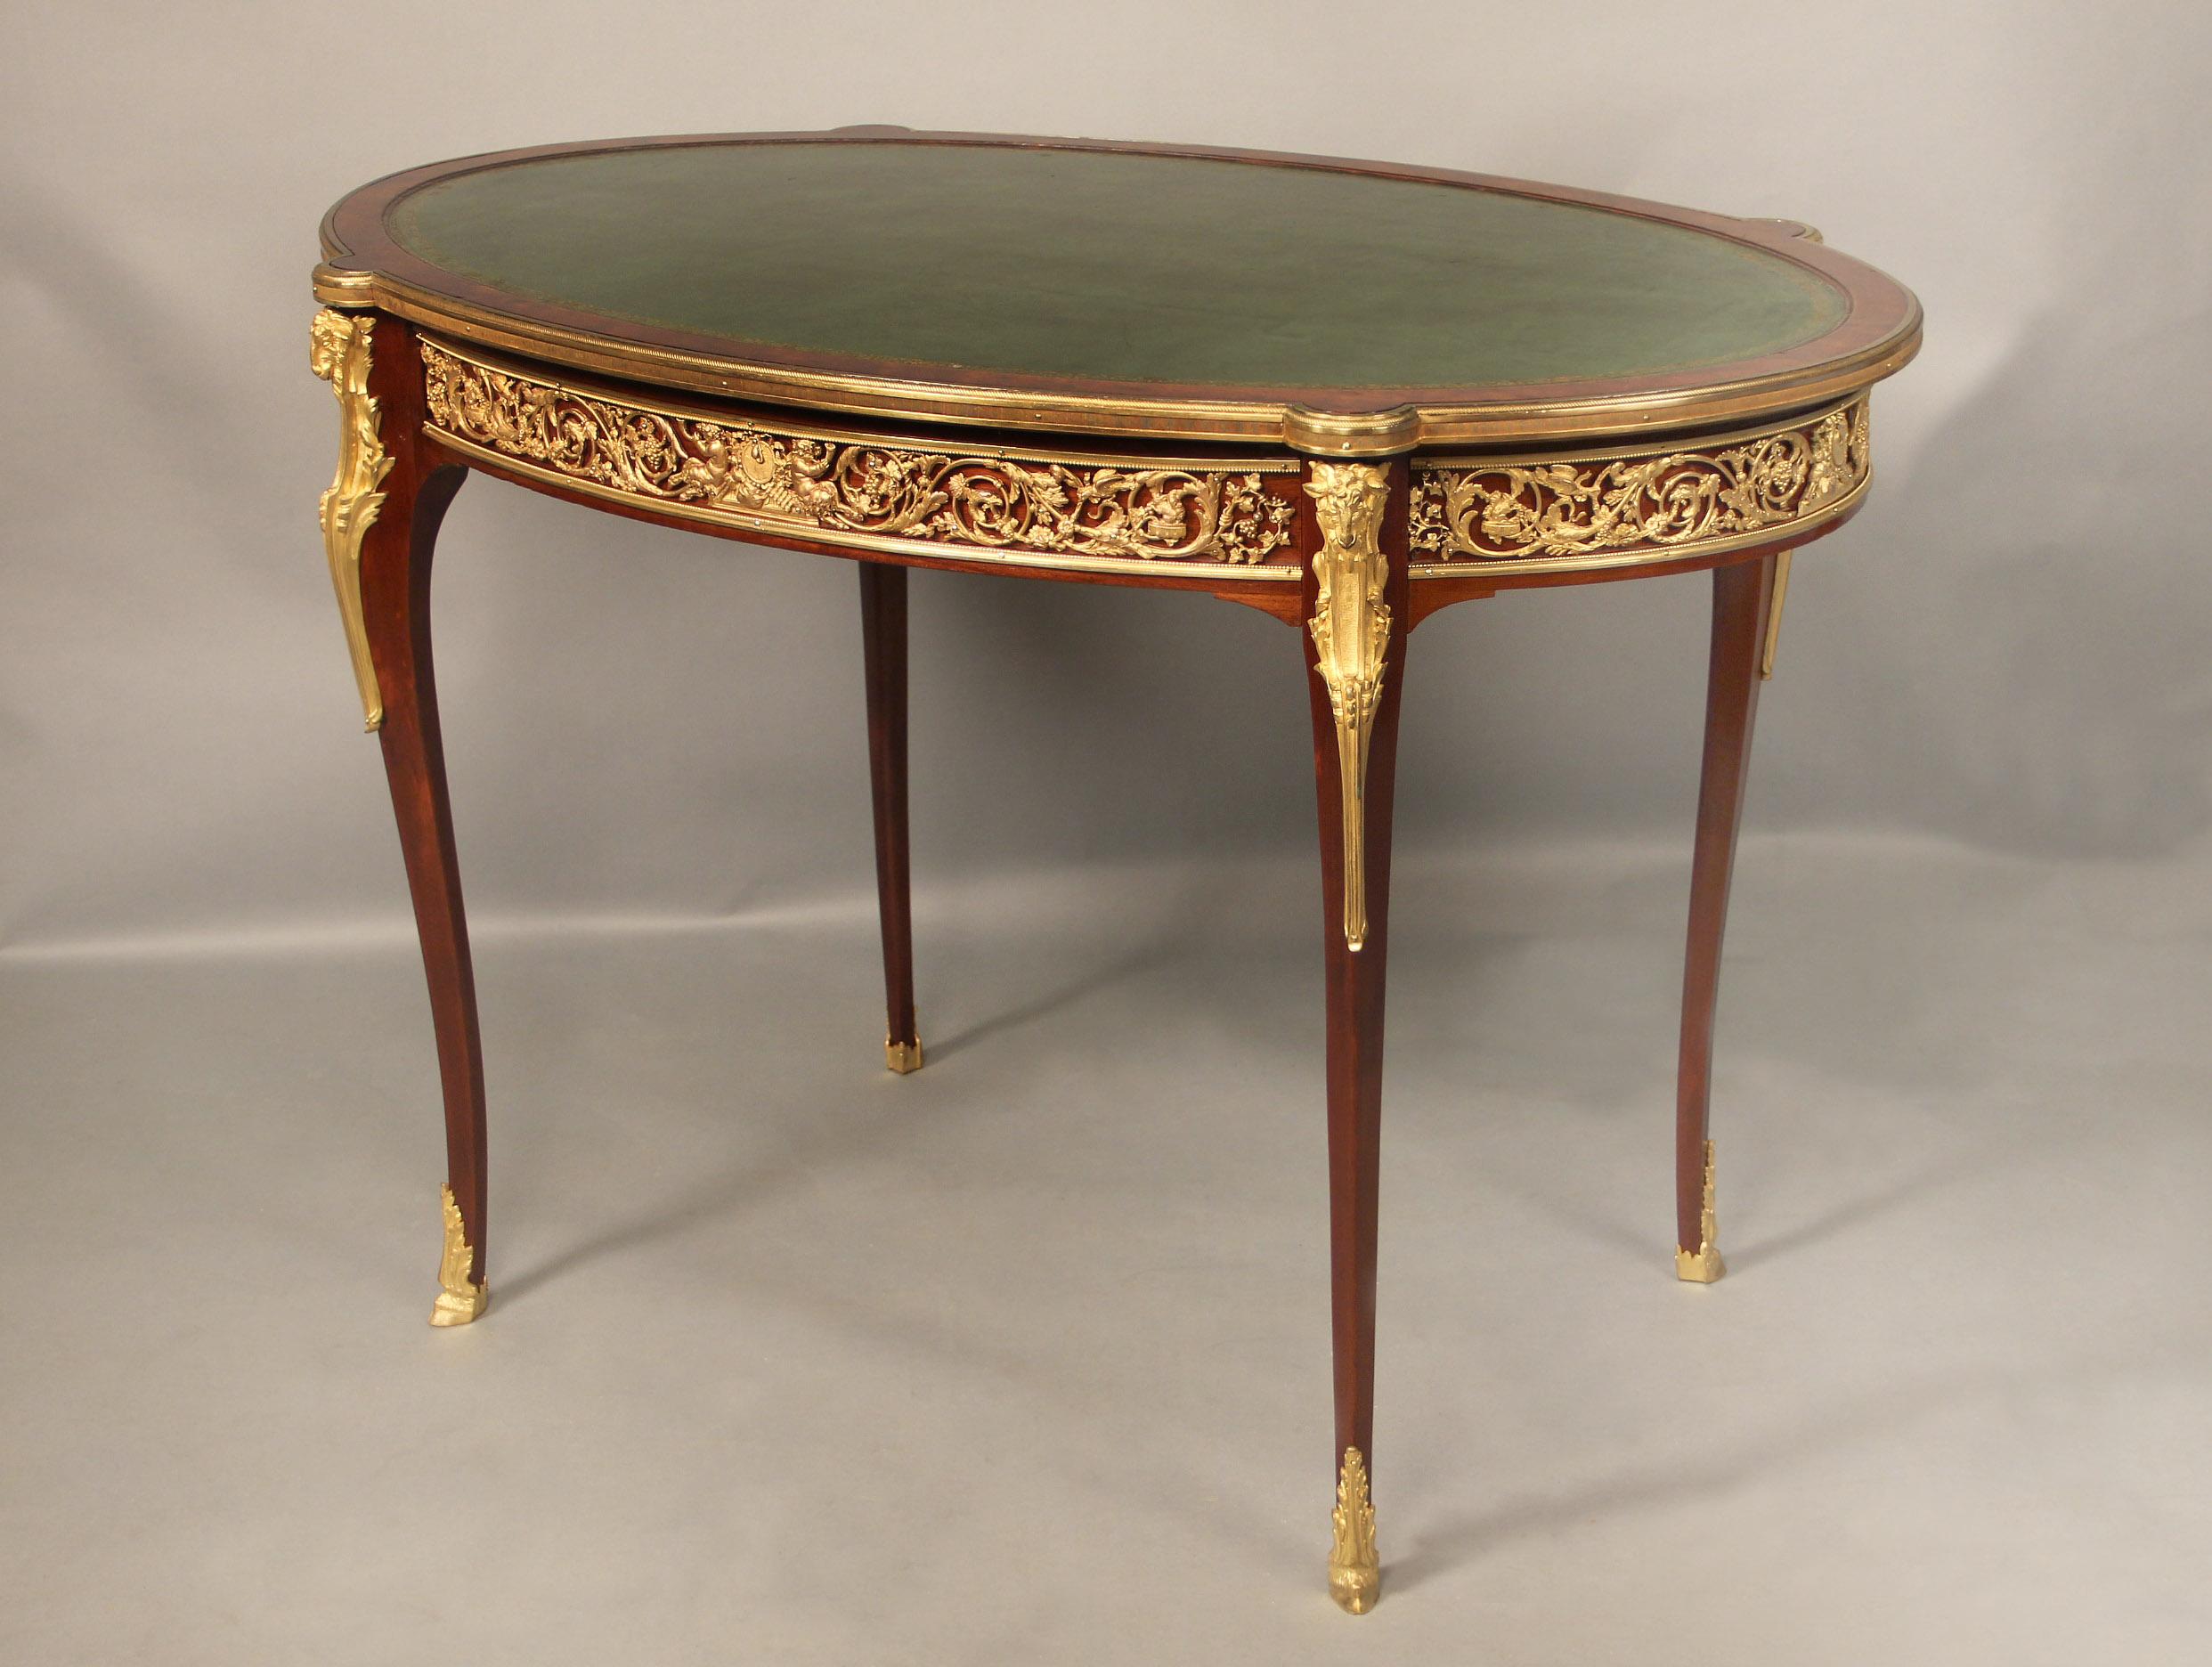 Table de style Louis XV de la fin du XIXe siècle, montée sur bronze doré